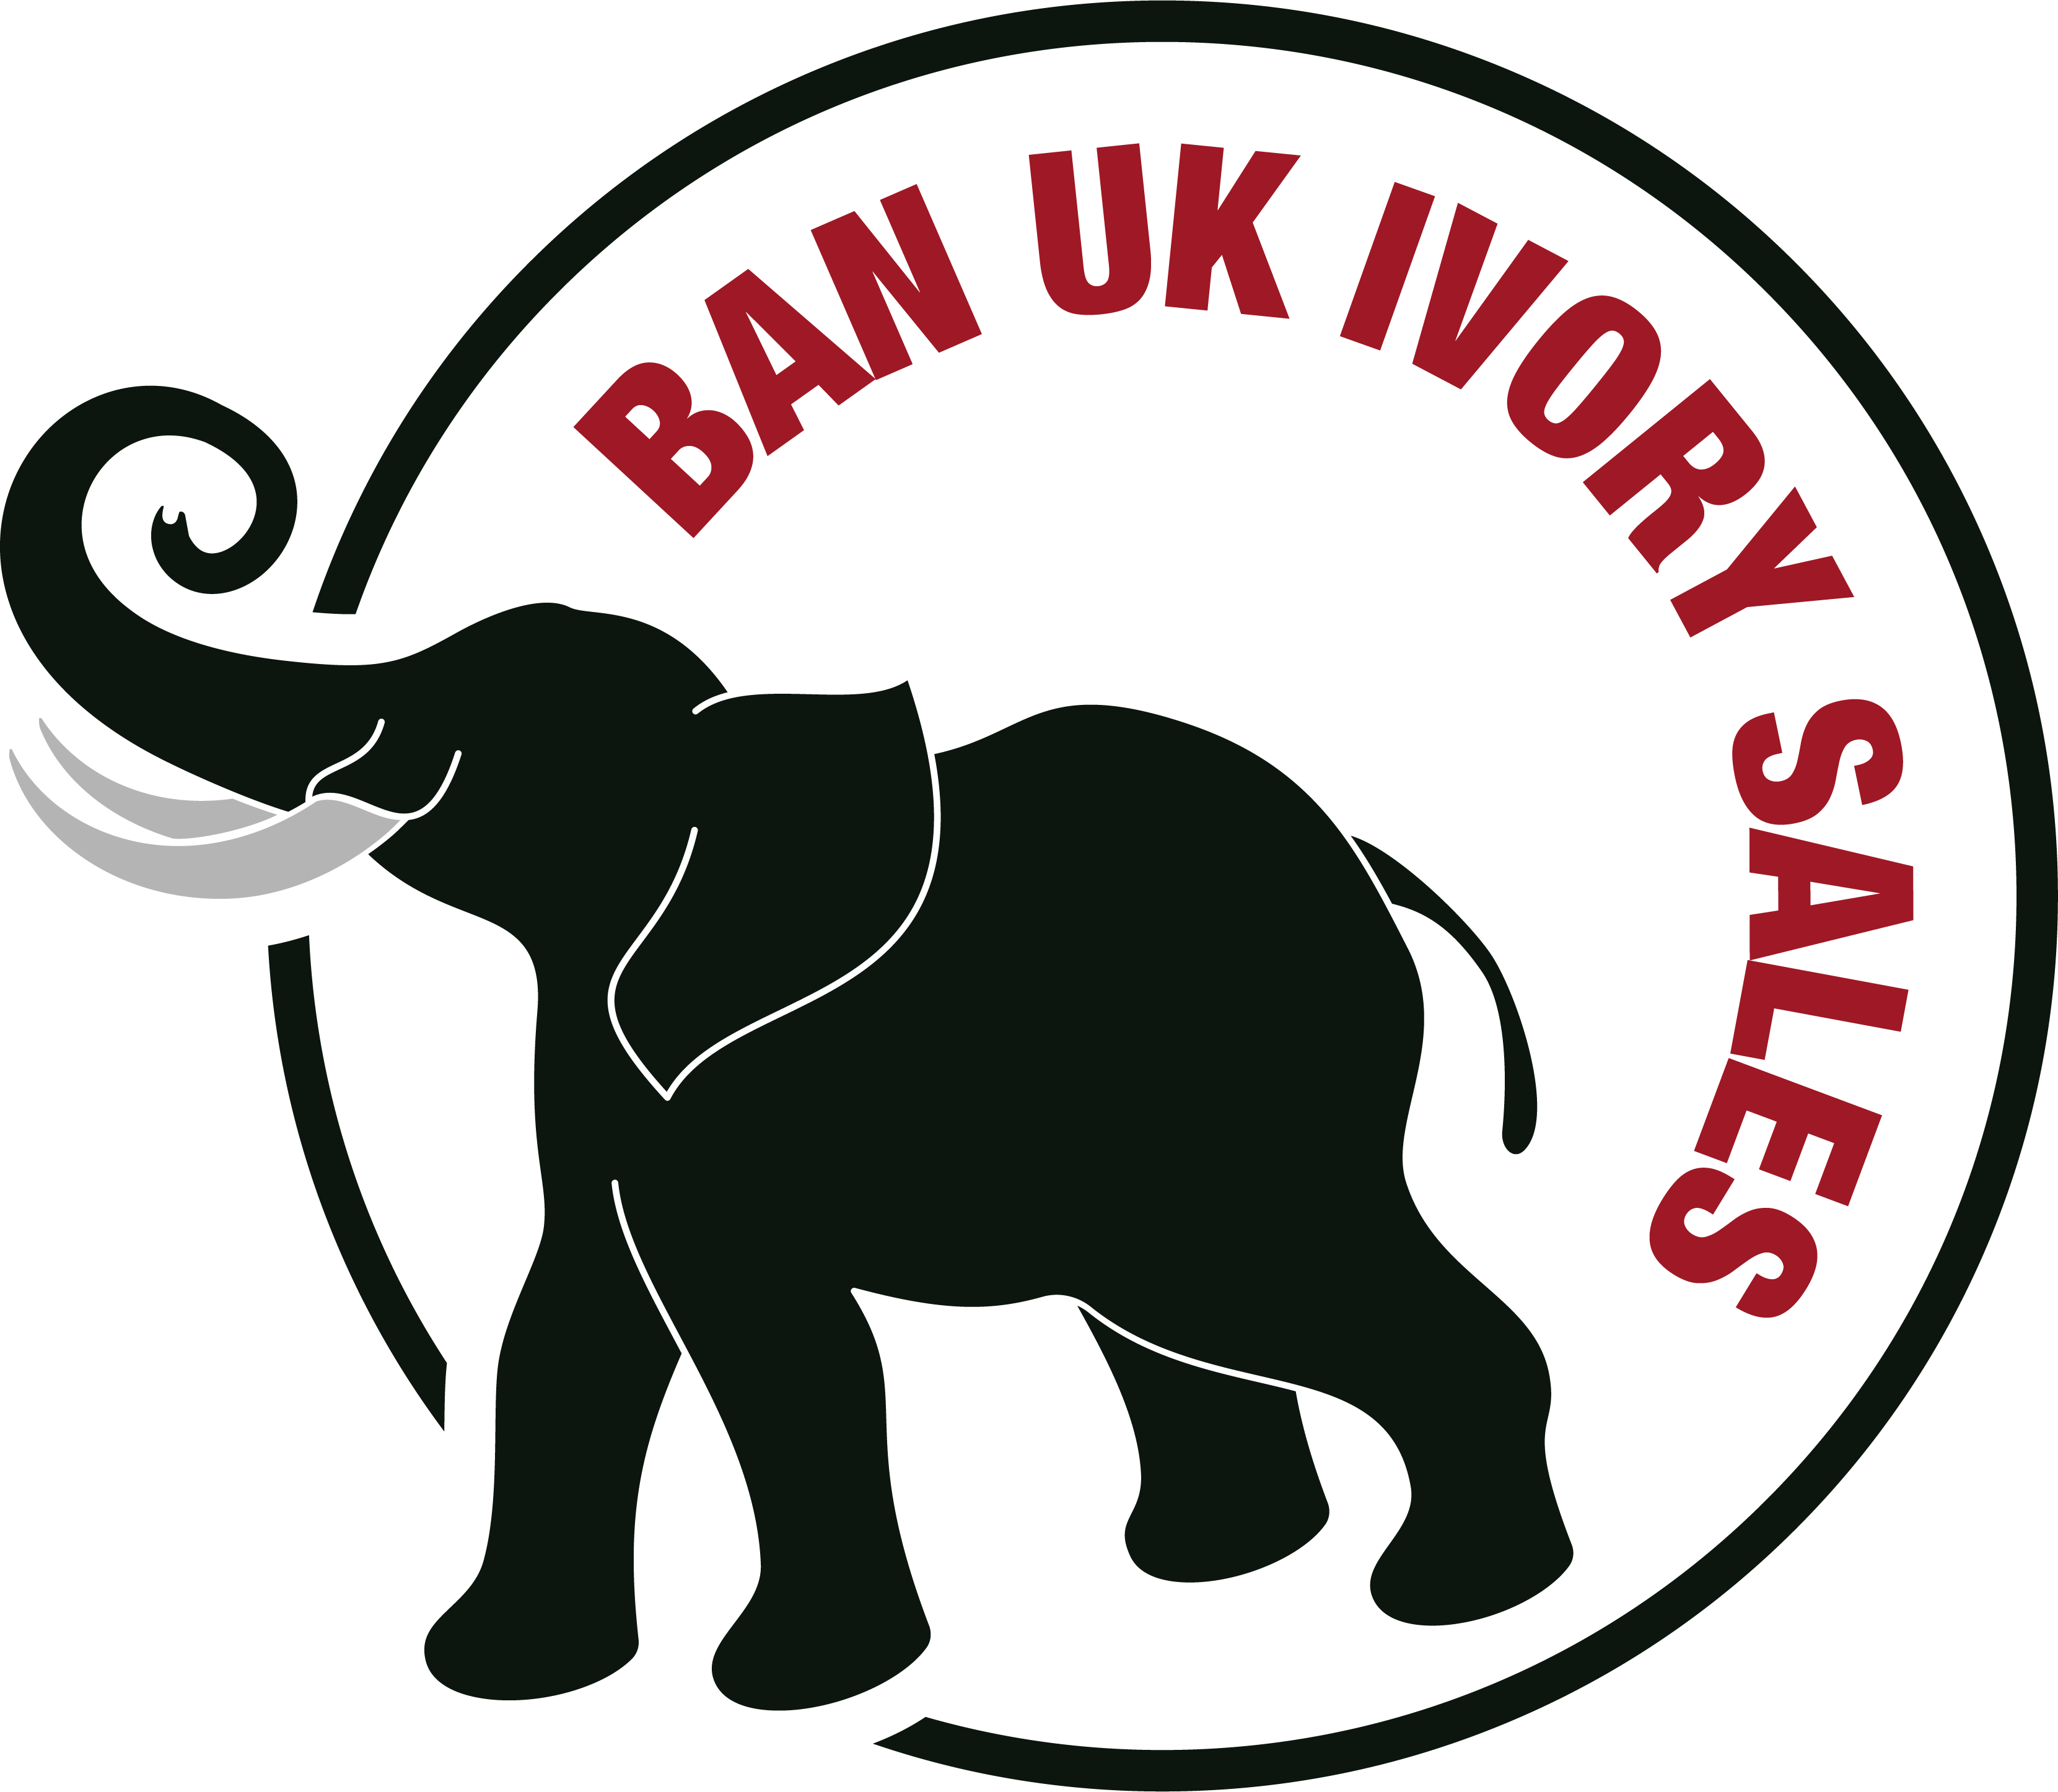 Elephant Tusk Logo - About Us - Ban UK Ivory Sales